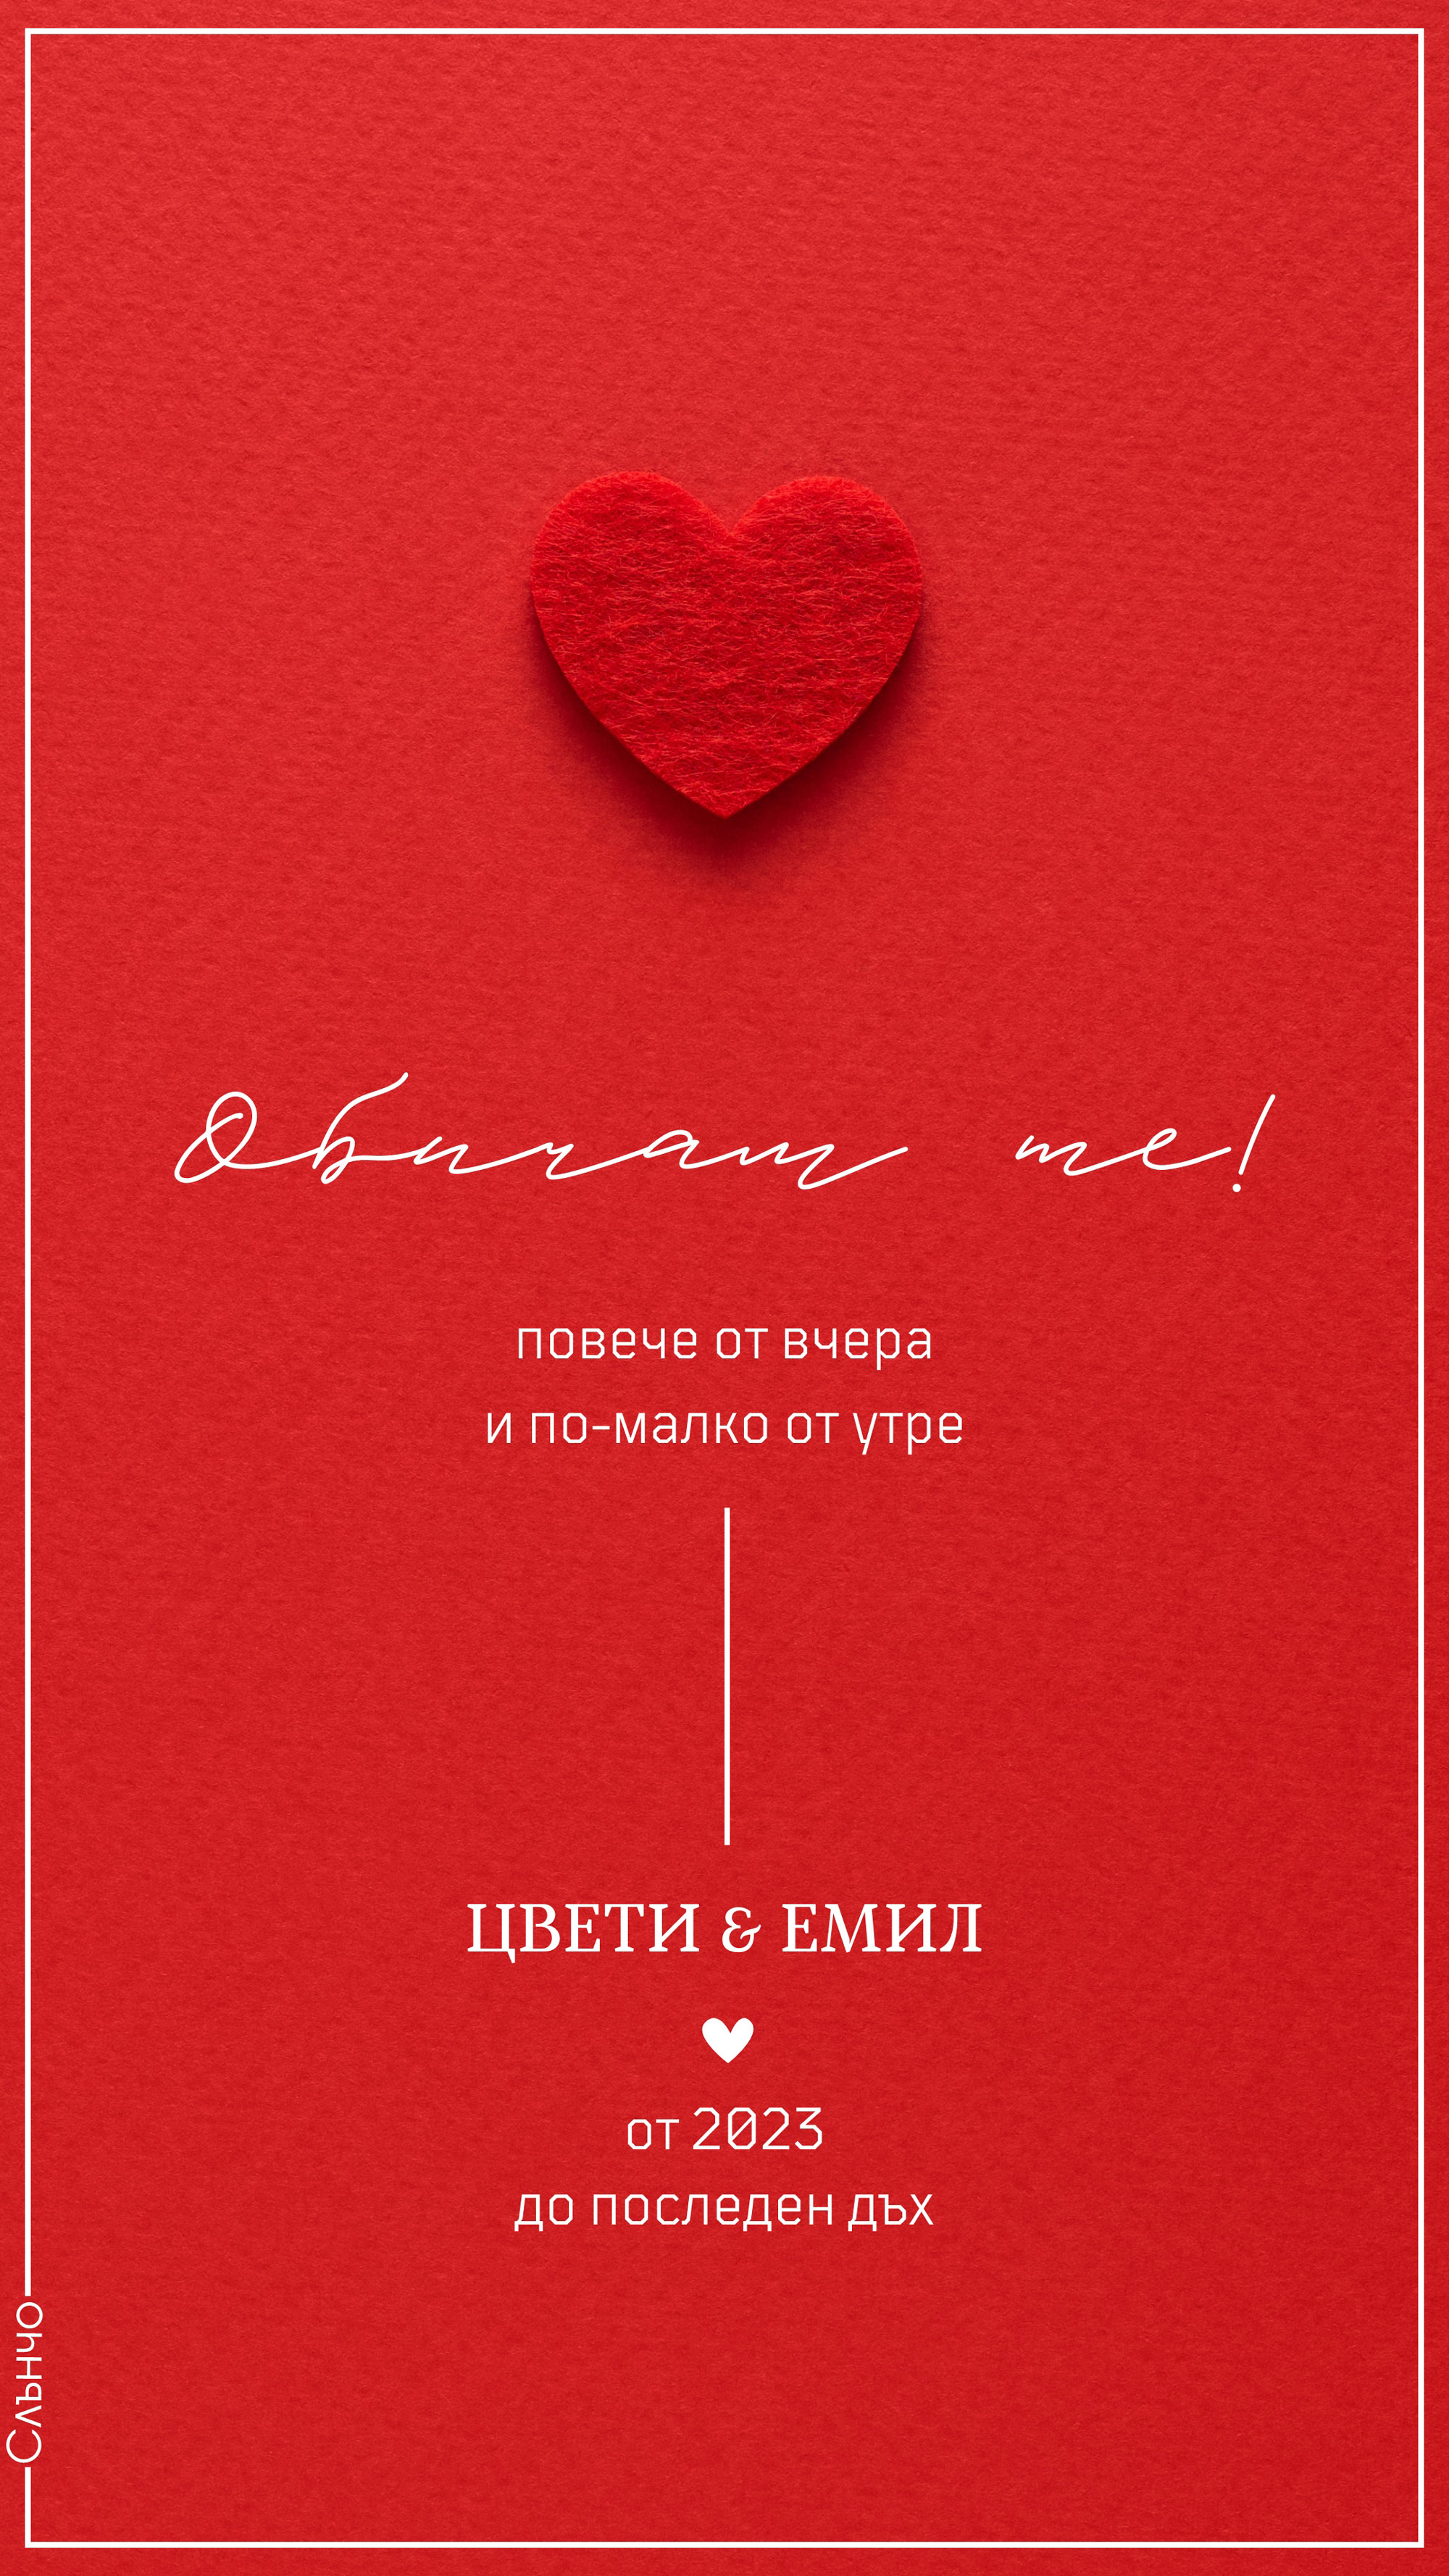 Обичам те повече от вчера – Честит Свети Валентин – Картички за Свети Валентин